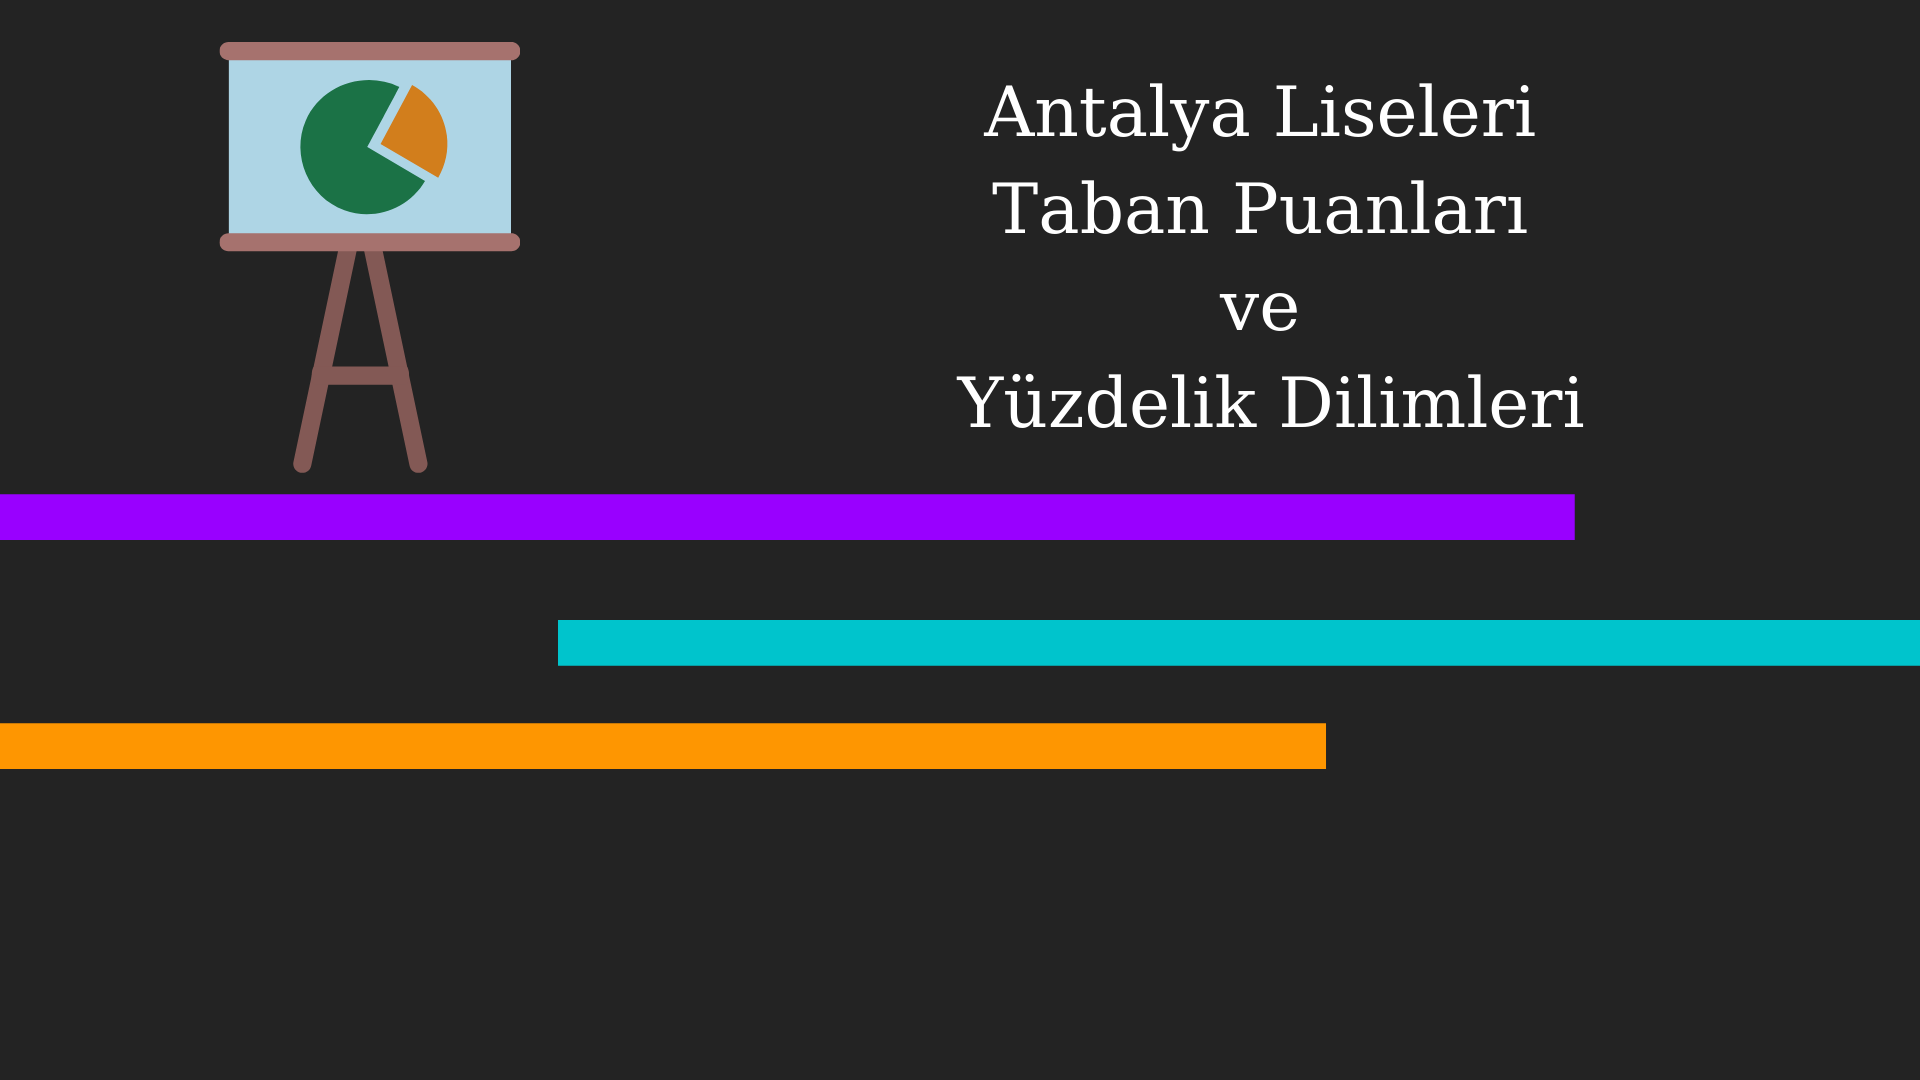 Antalya Liseleri Taban Puanları ve Yüzdelik Dilimleri 2021